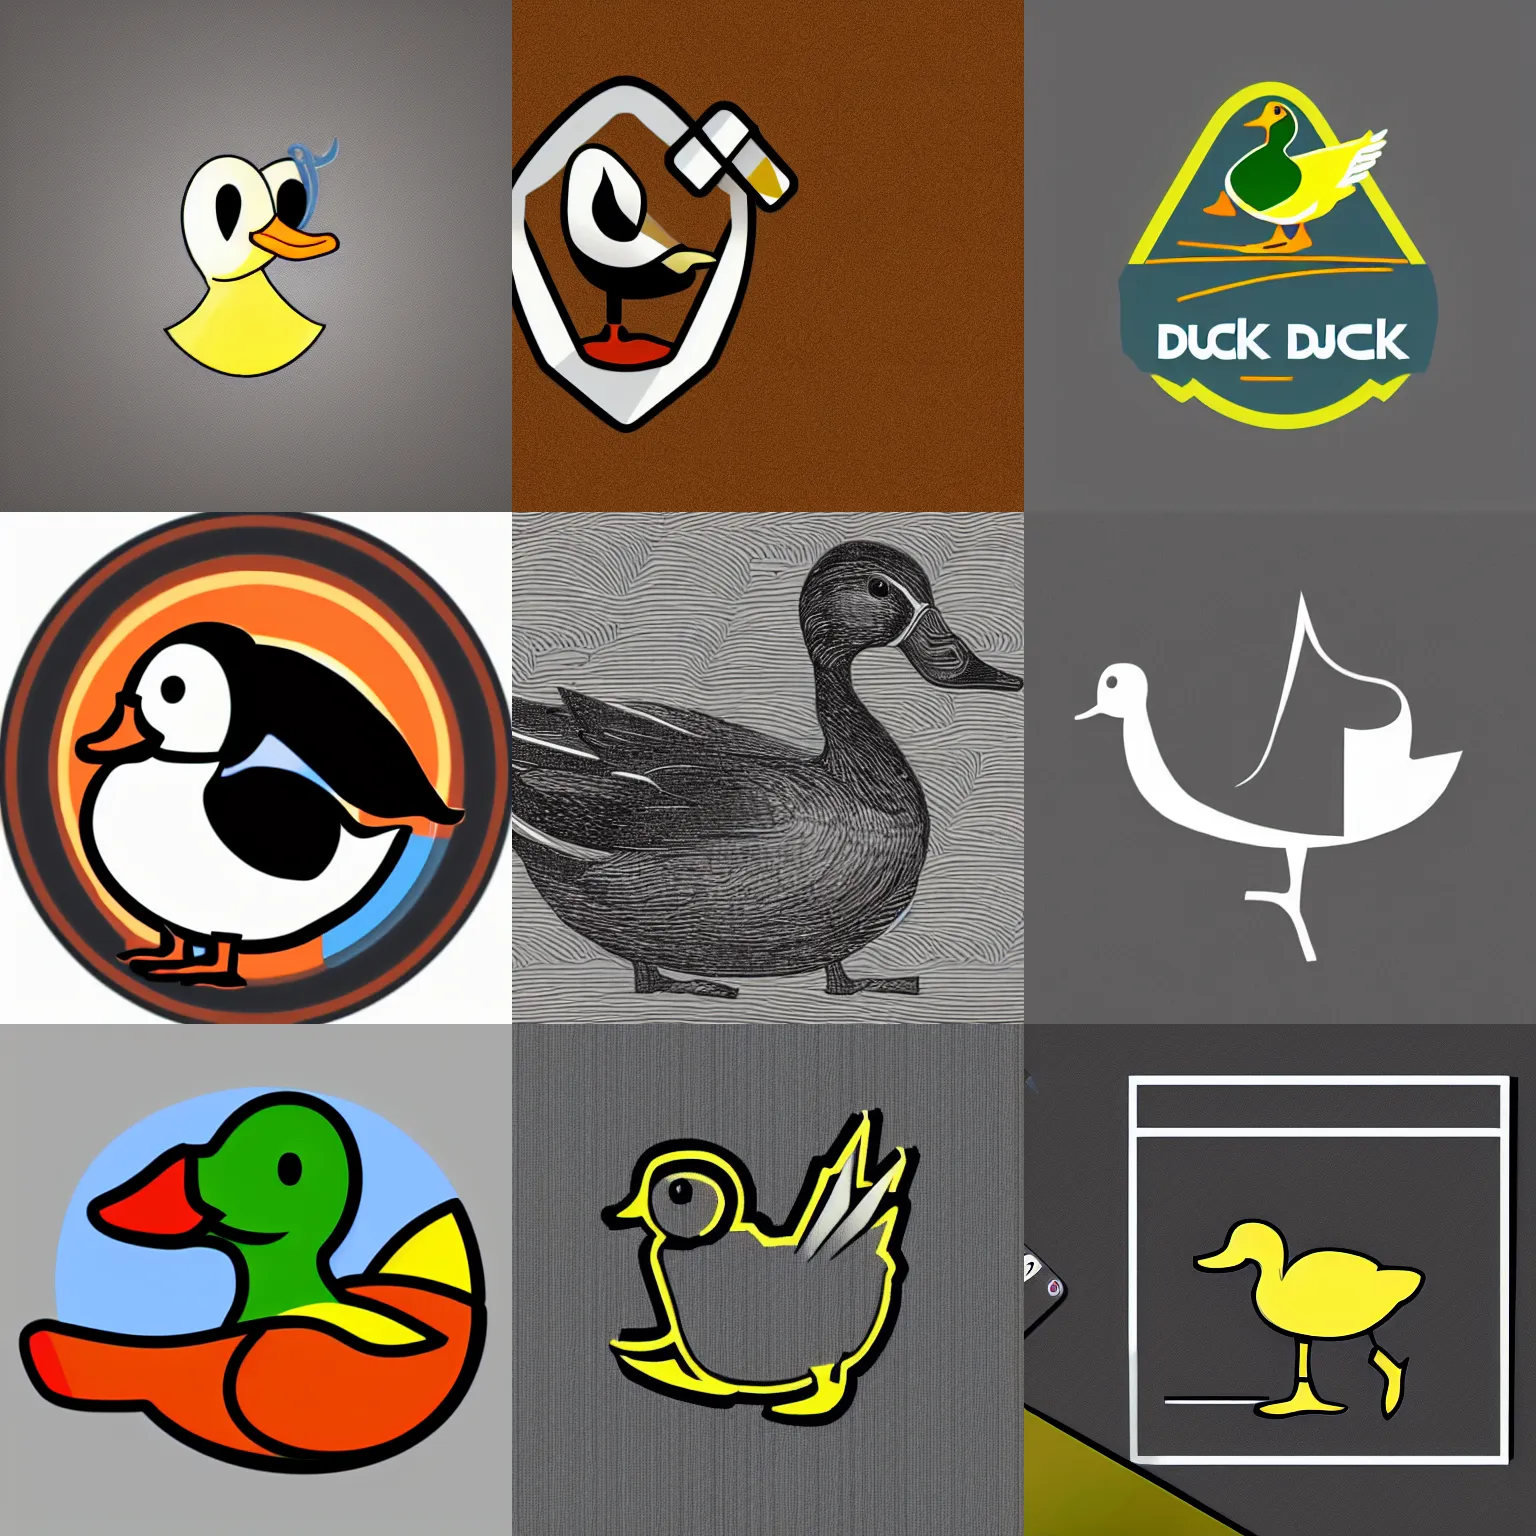 Prompt: a duck, modern, pictorial mark, an app logo